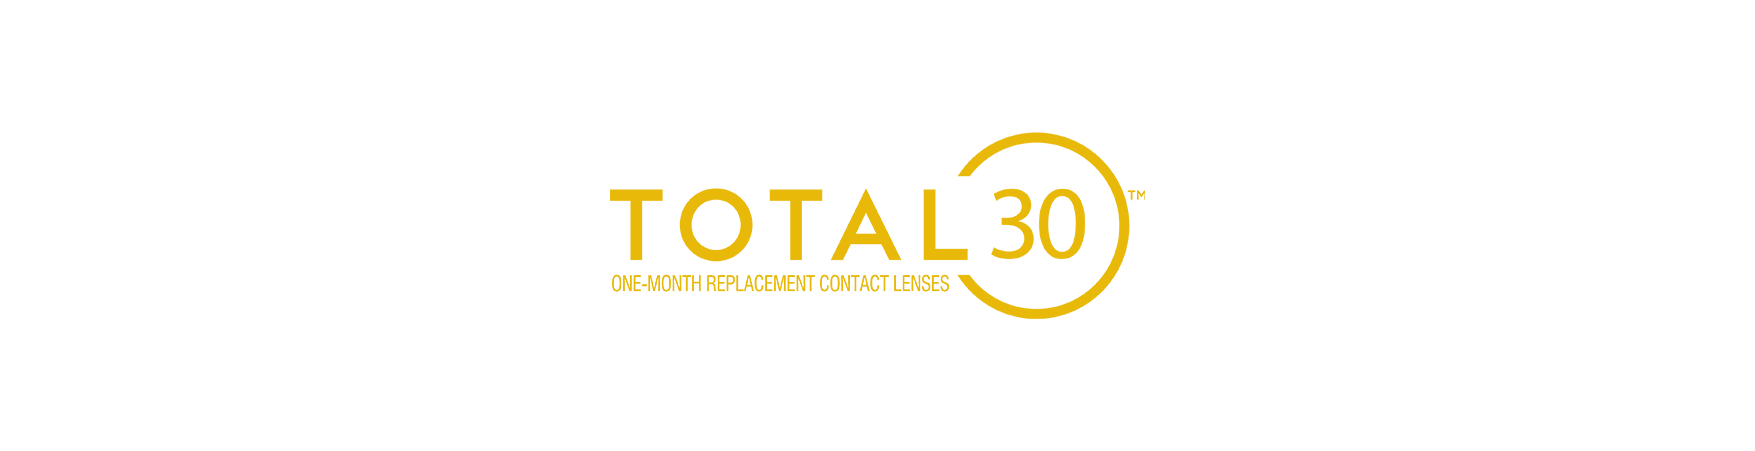 توتال 30